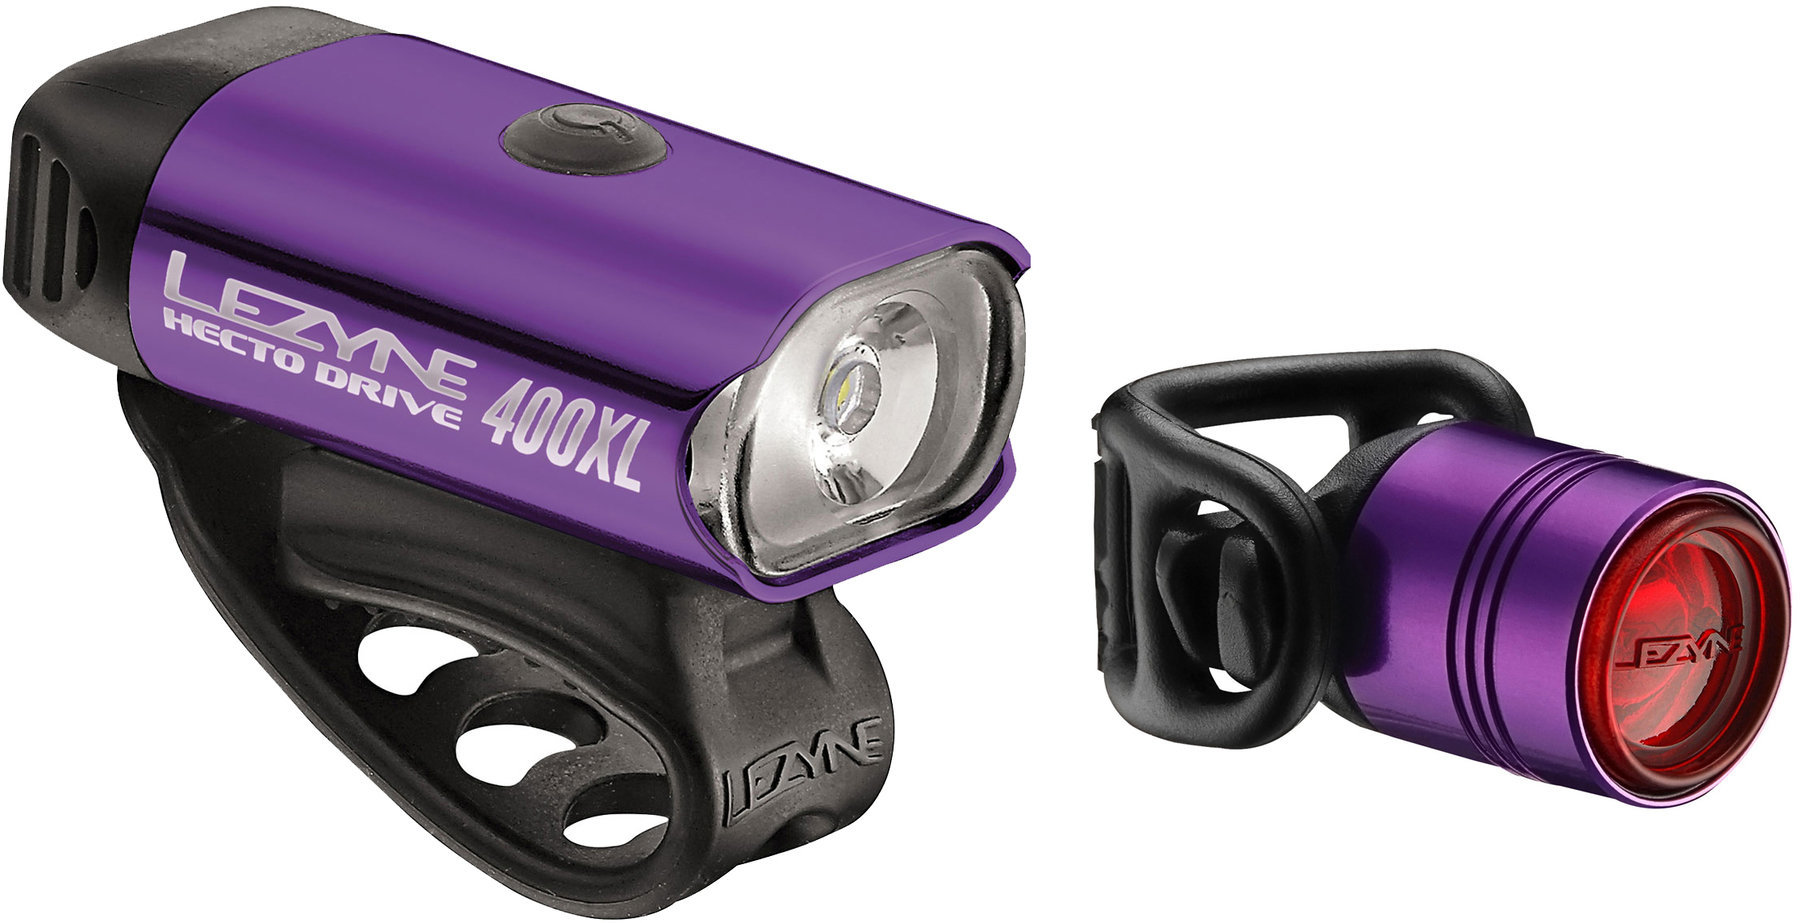 Éclairage de vélo Lezyne Hecto Drive 400Xl / Femto Pair Purple